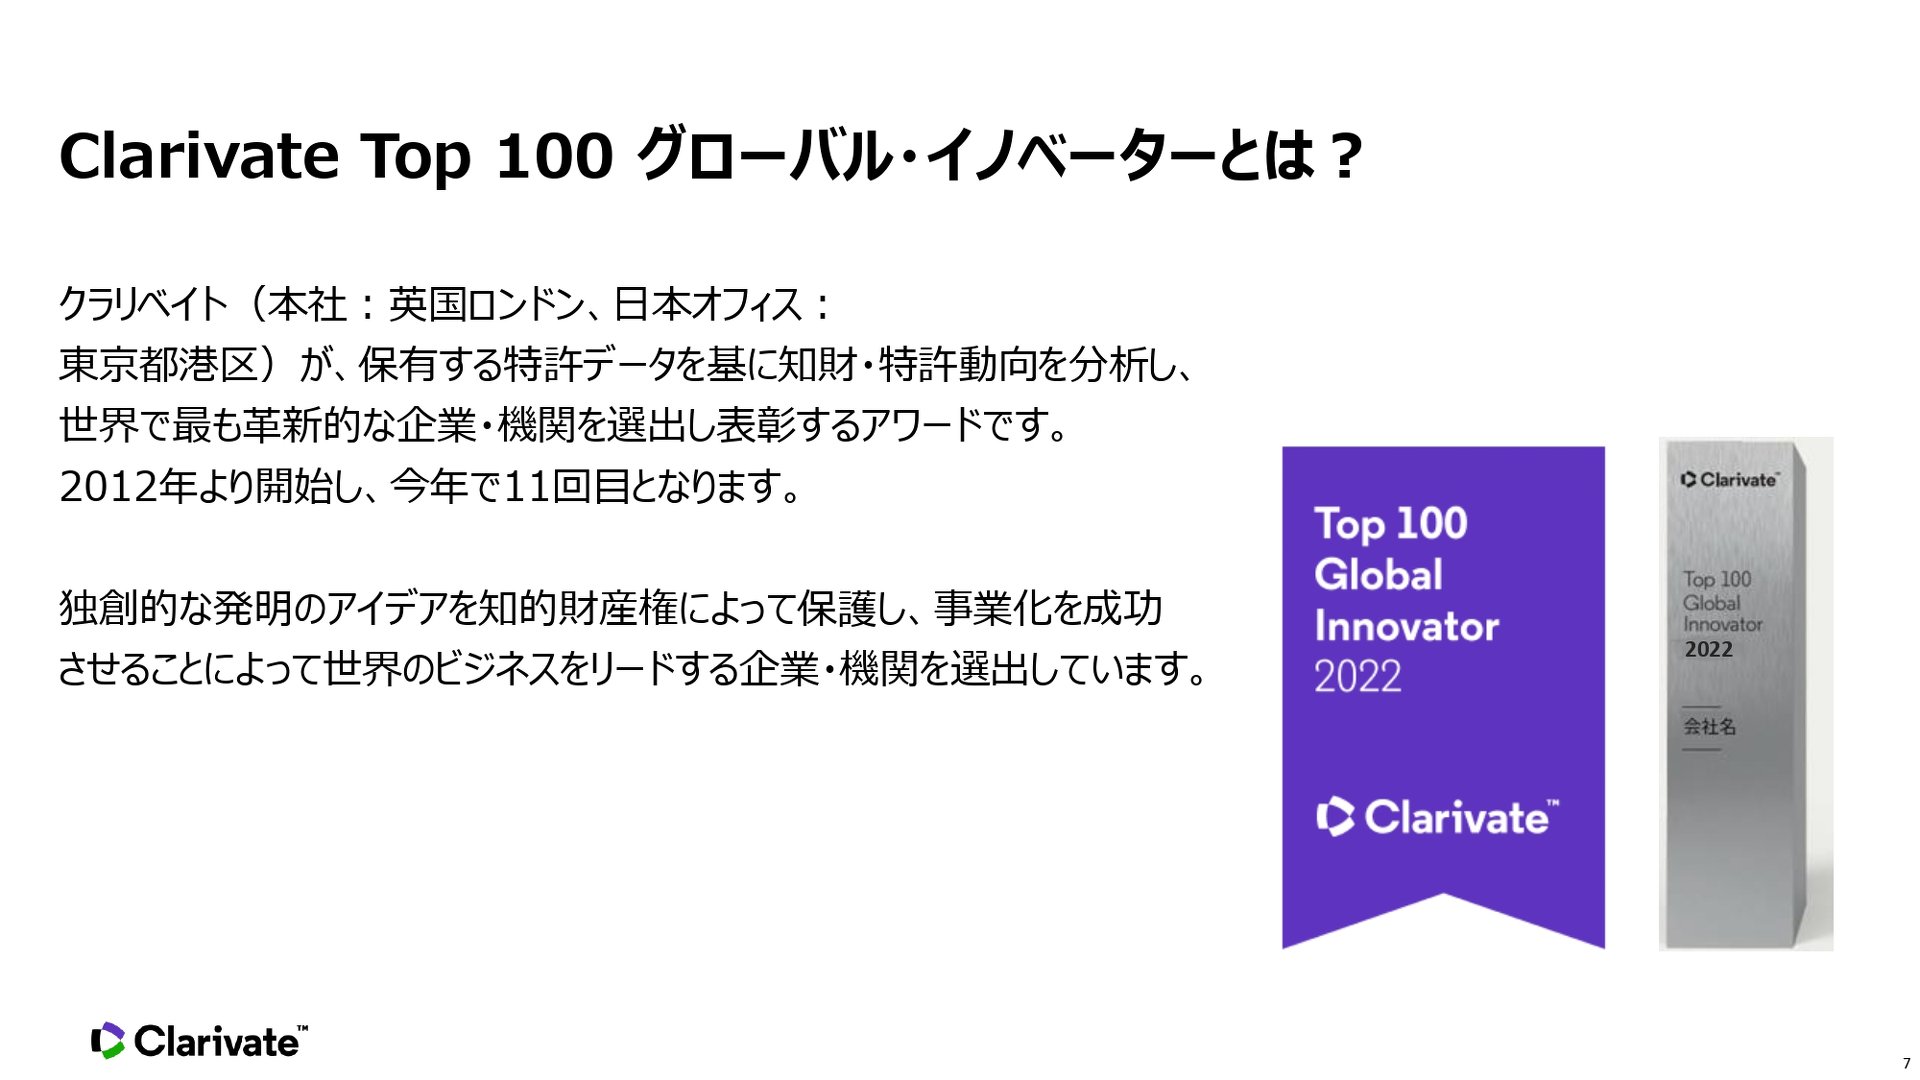 Clarivate Top 100 O[oECmx[^[̊TvmNbNĊgn oFNxCg